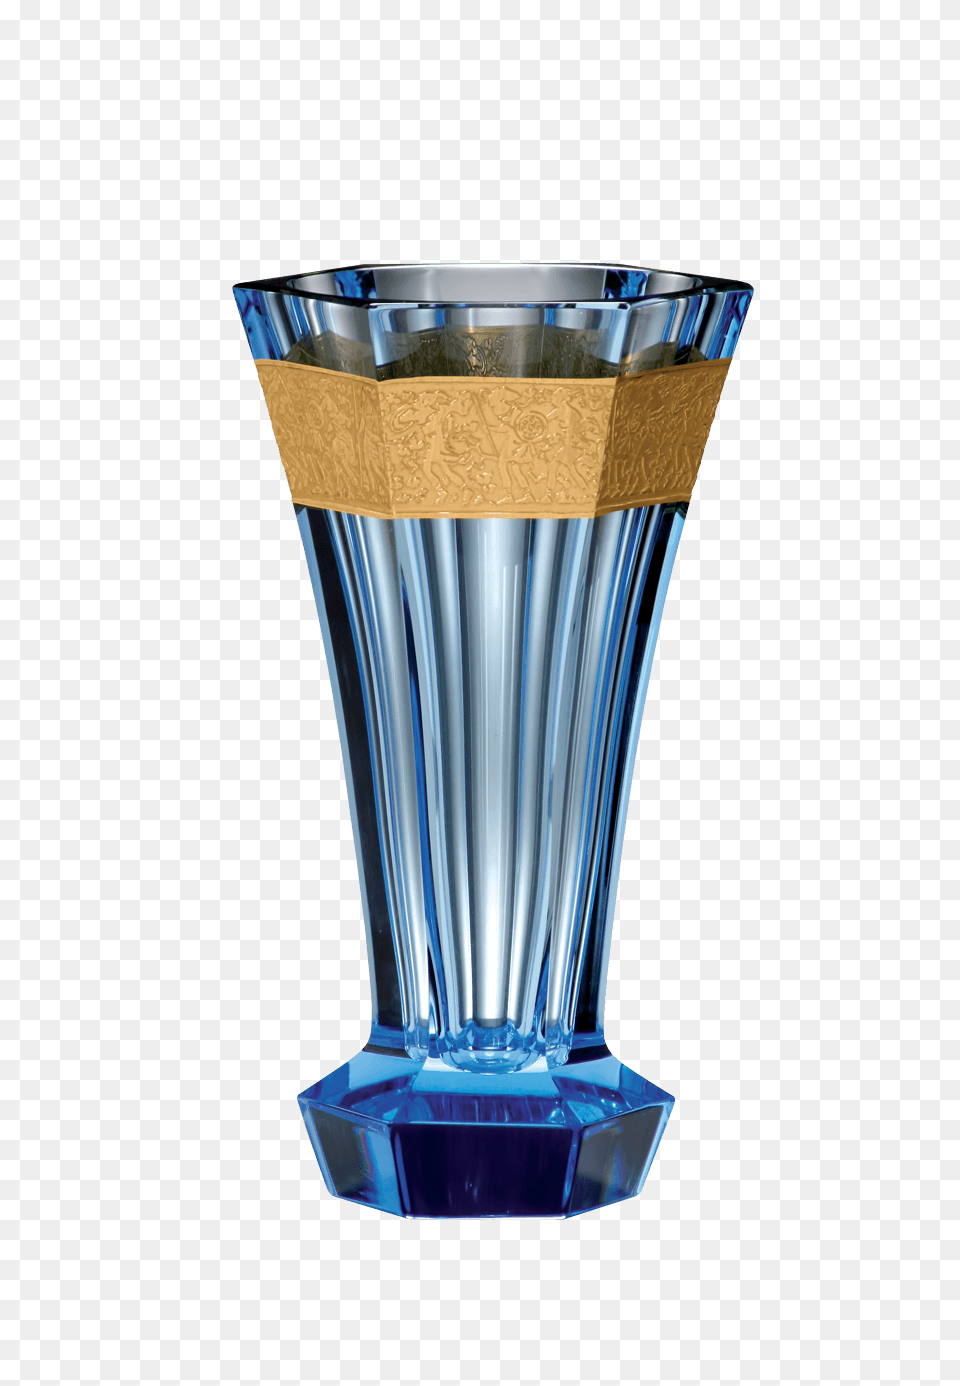 Unity Vase, Jar, Pottery, Bottle, Cosmetics Png Image